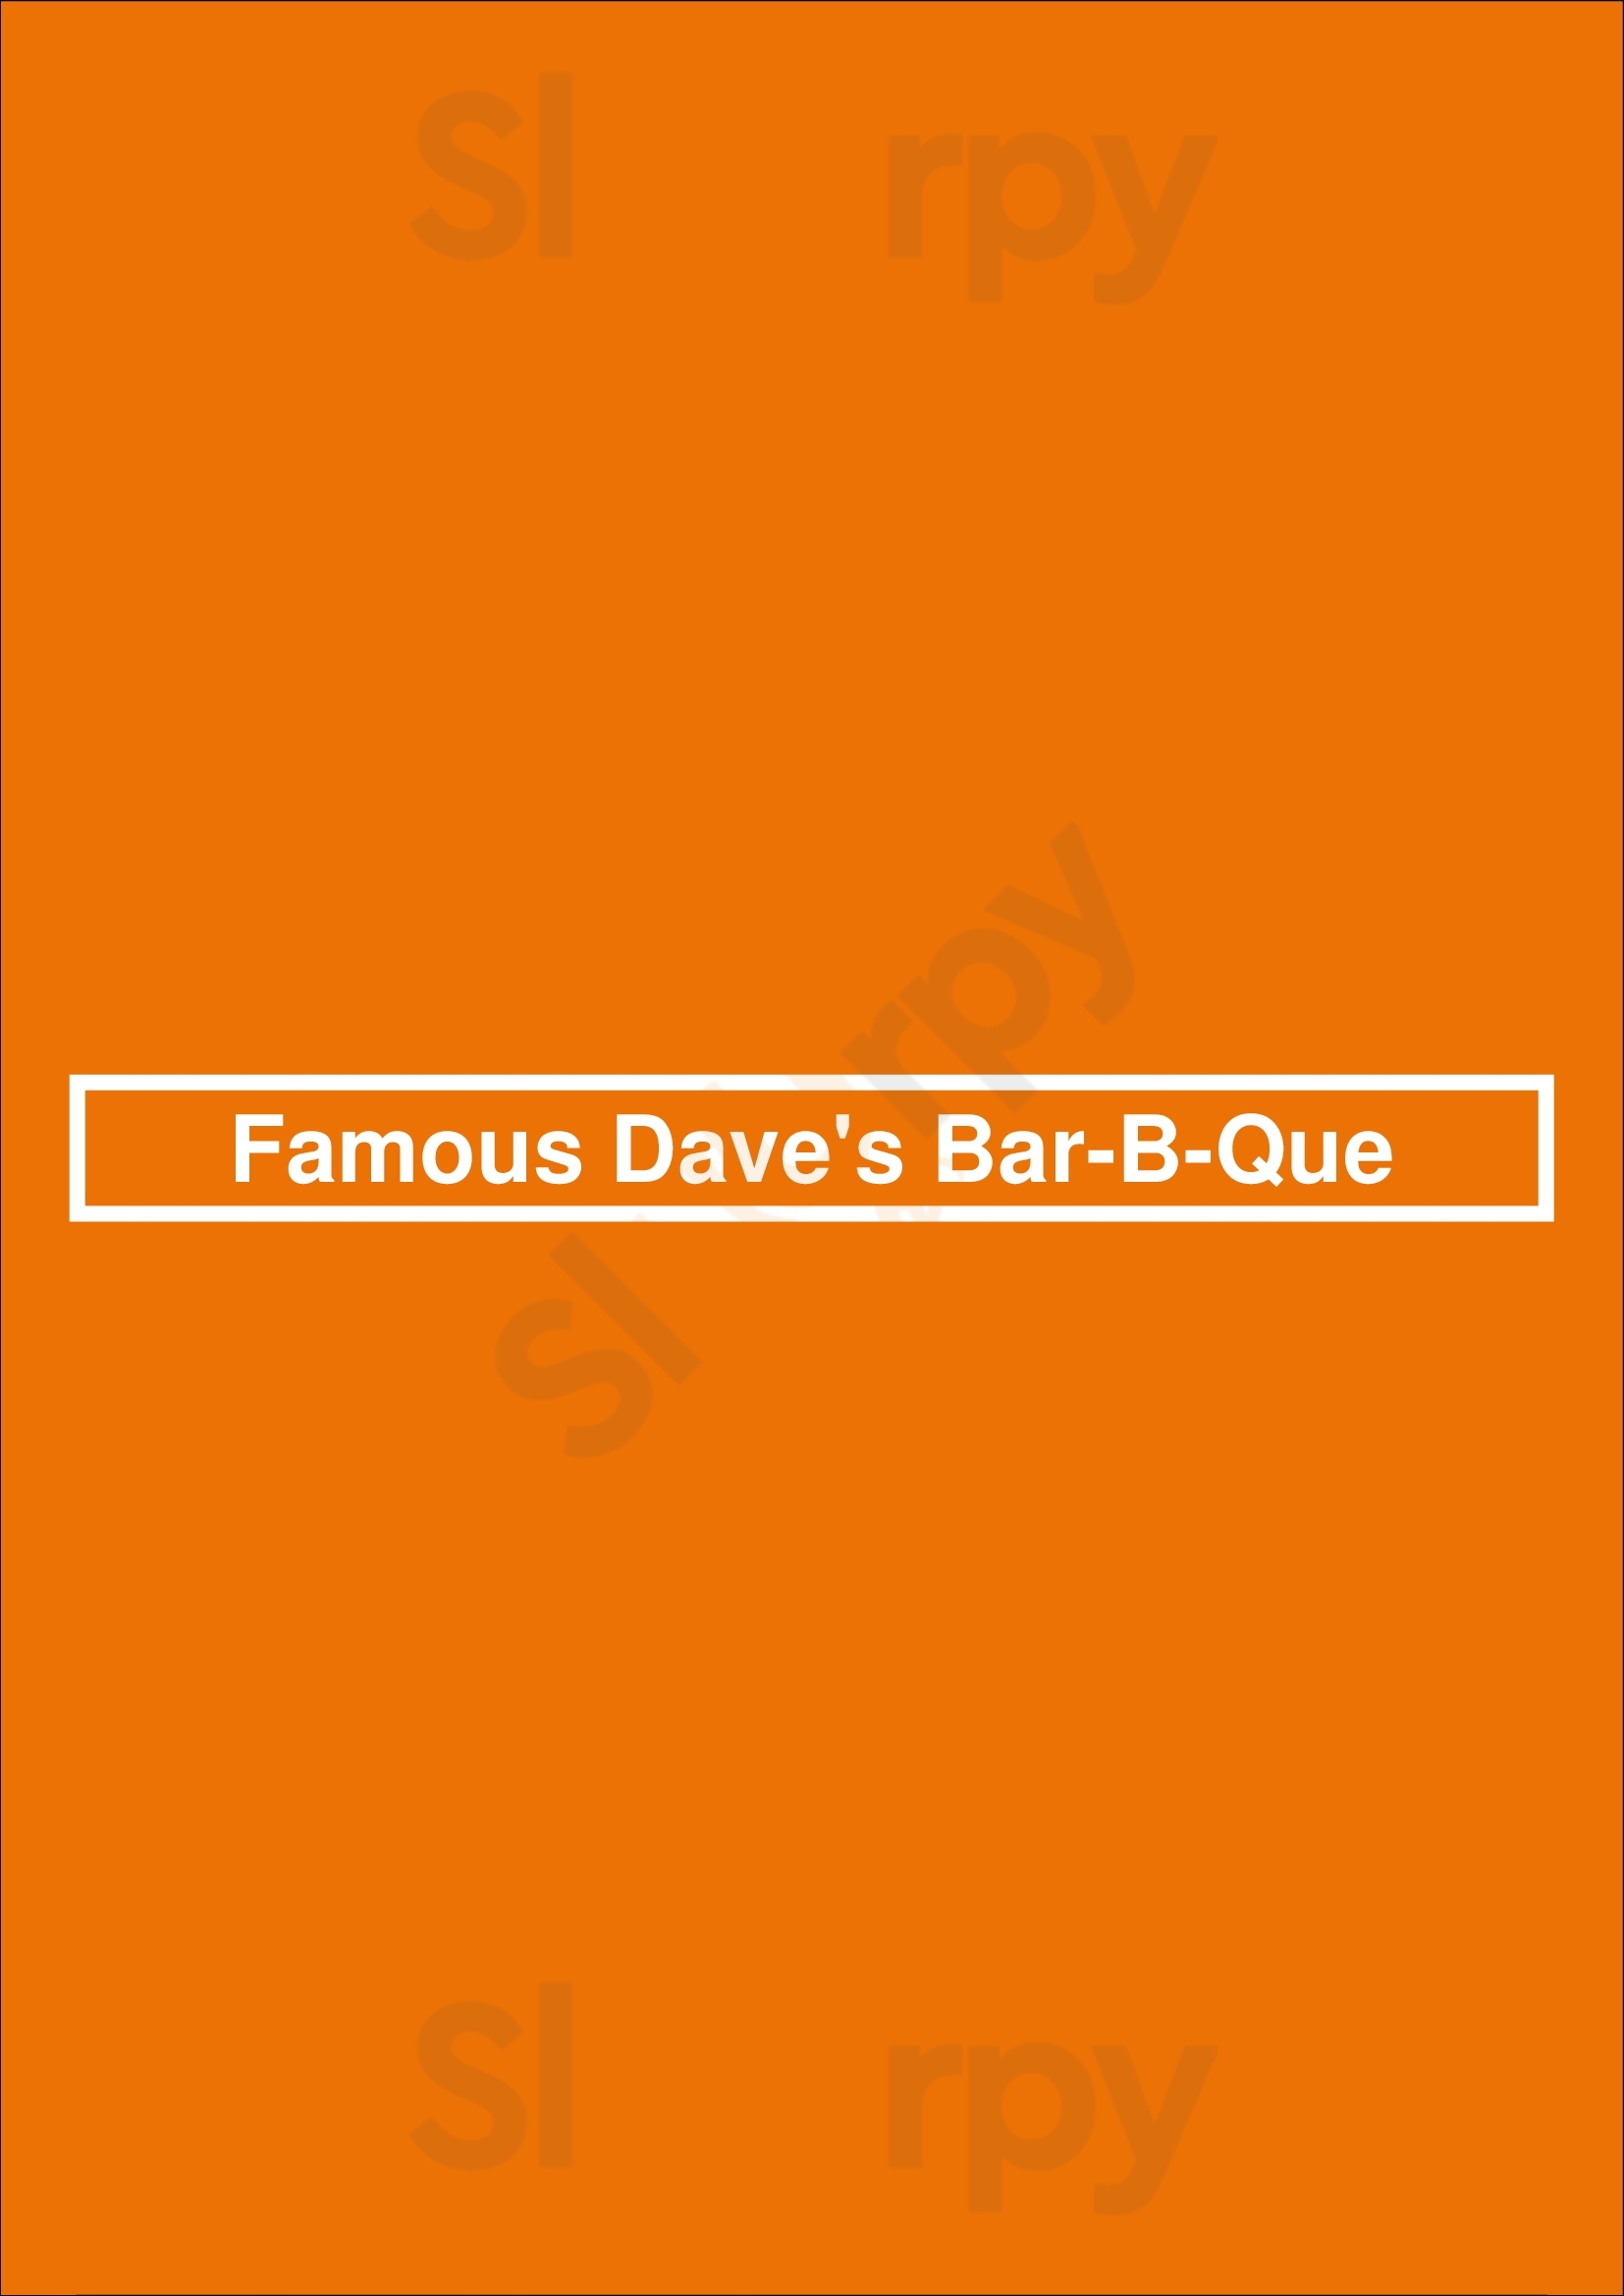 Famous Dave's Louisville Menu - 1